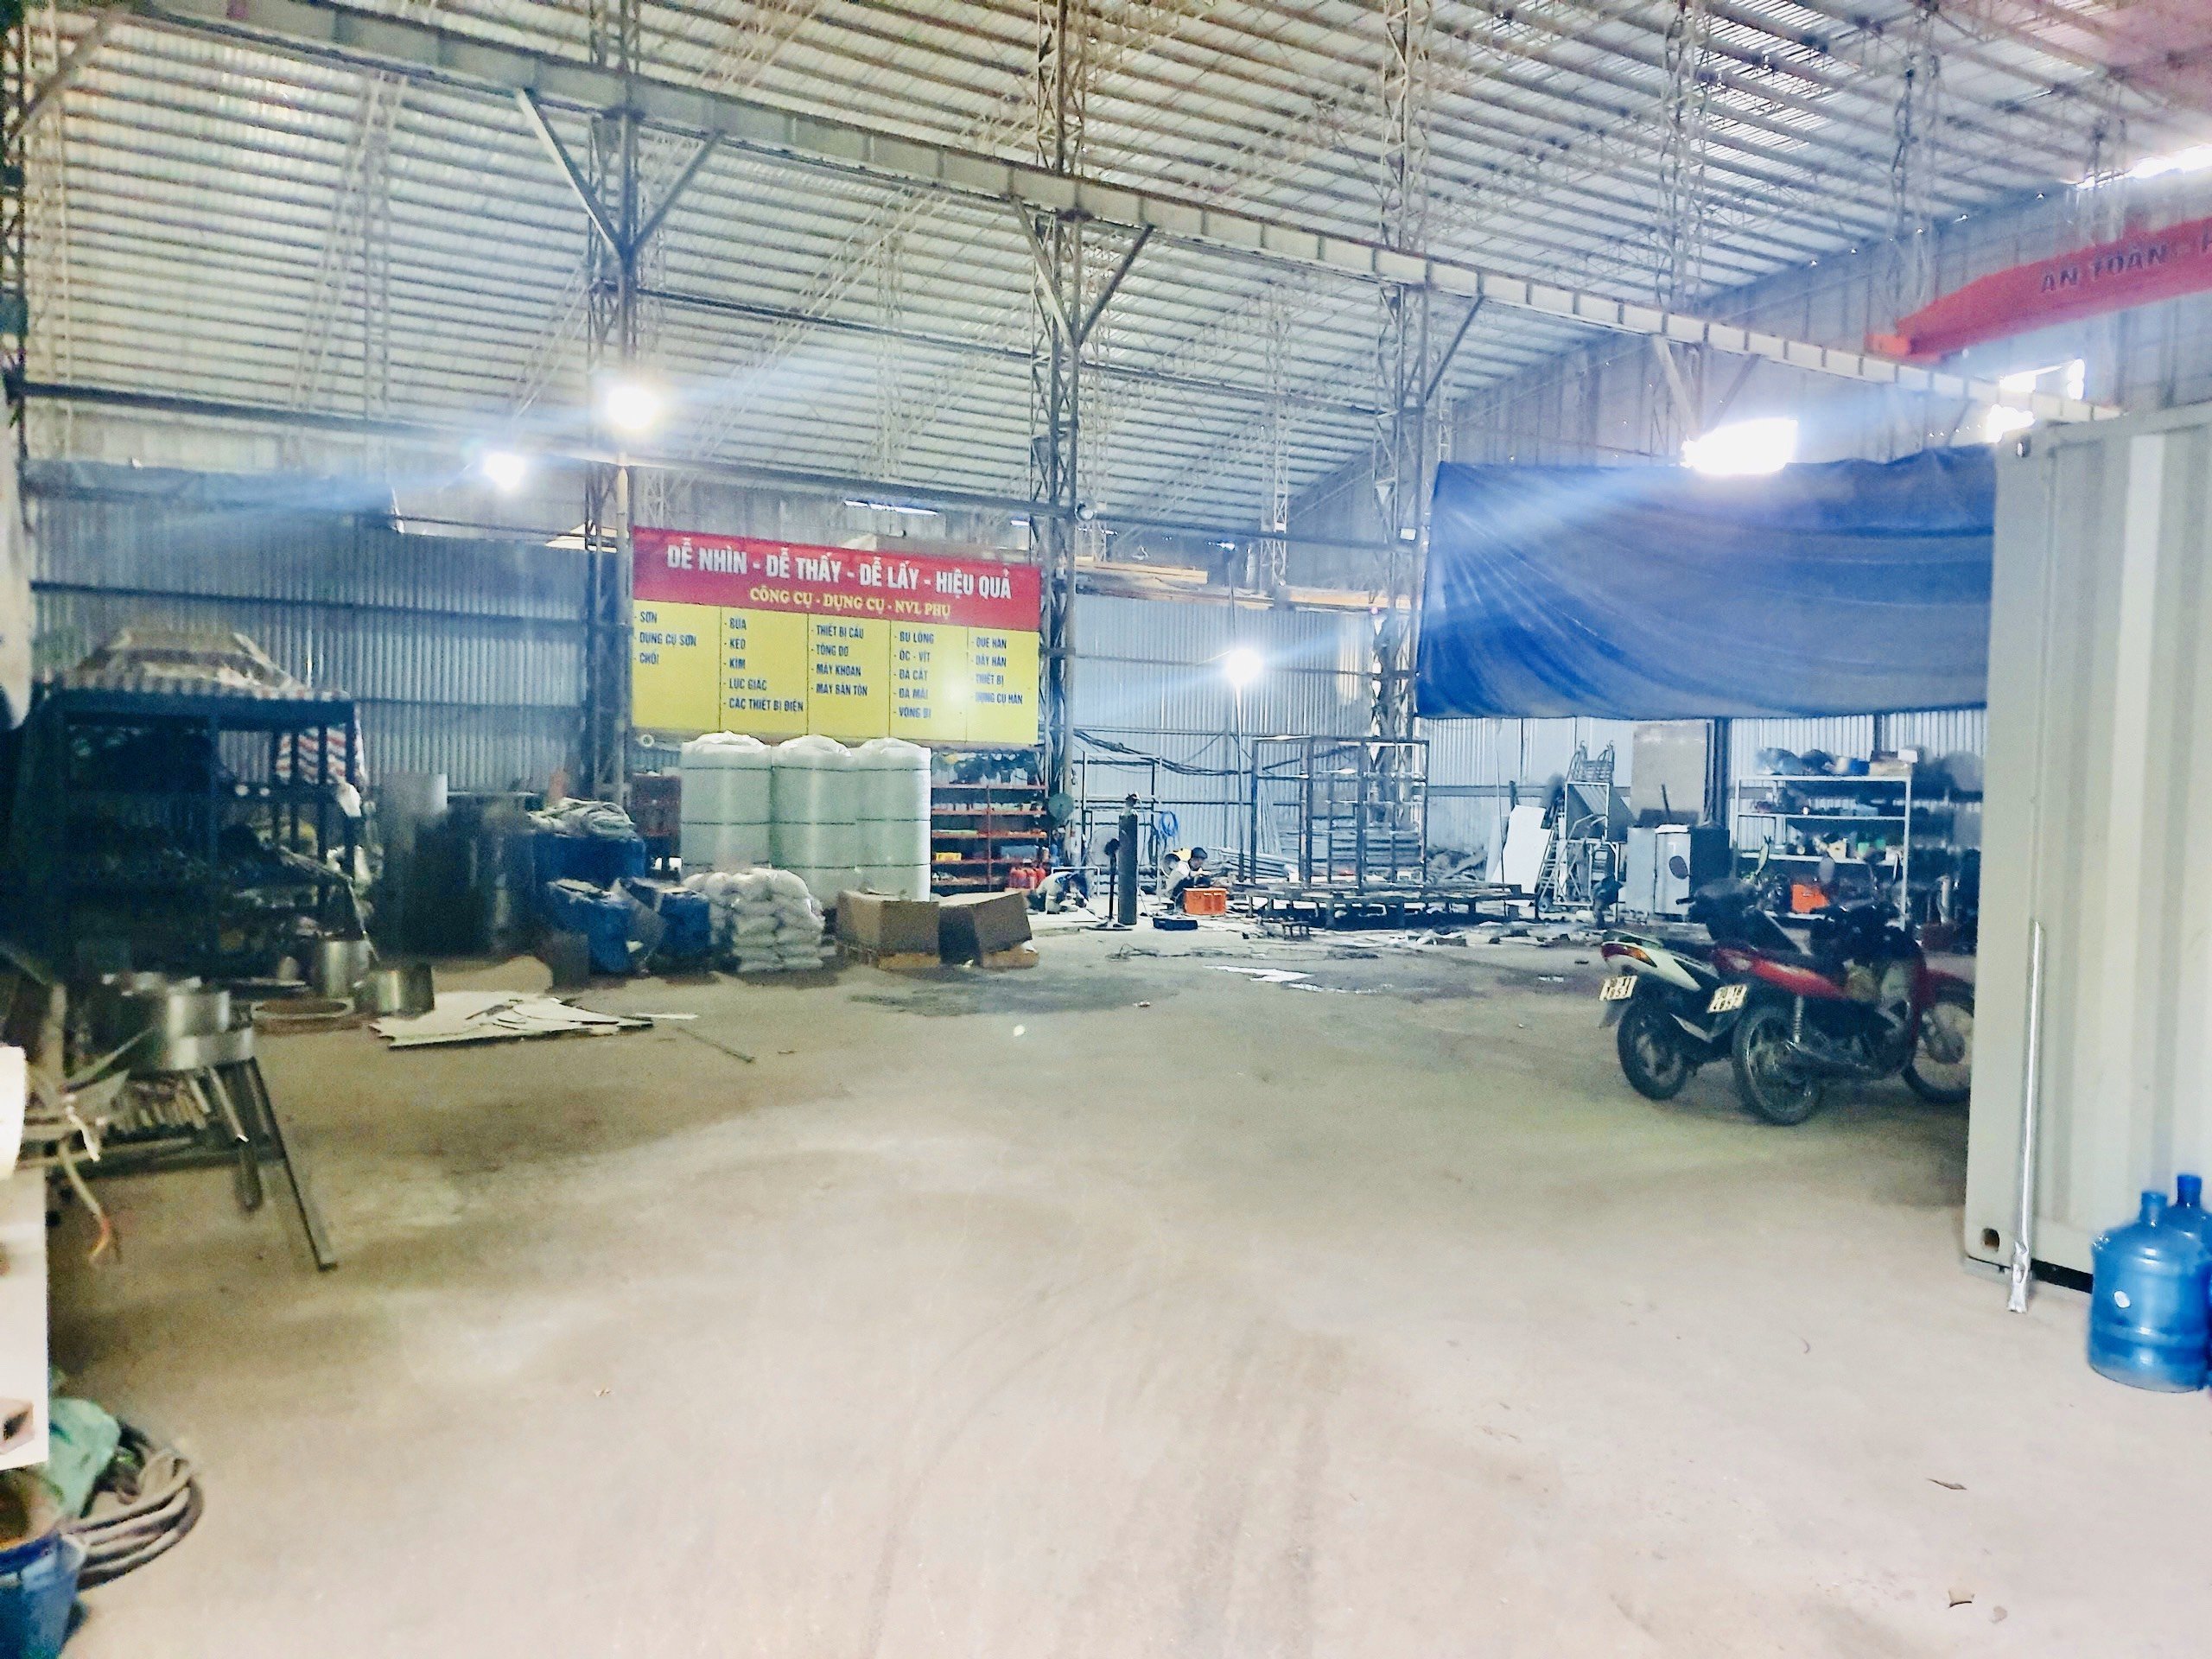 Cho thuê 600 m2 kho xưởng trong KCN tại Hà Nội